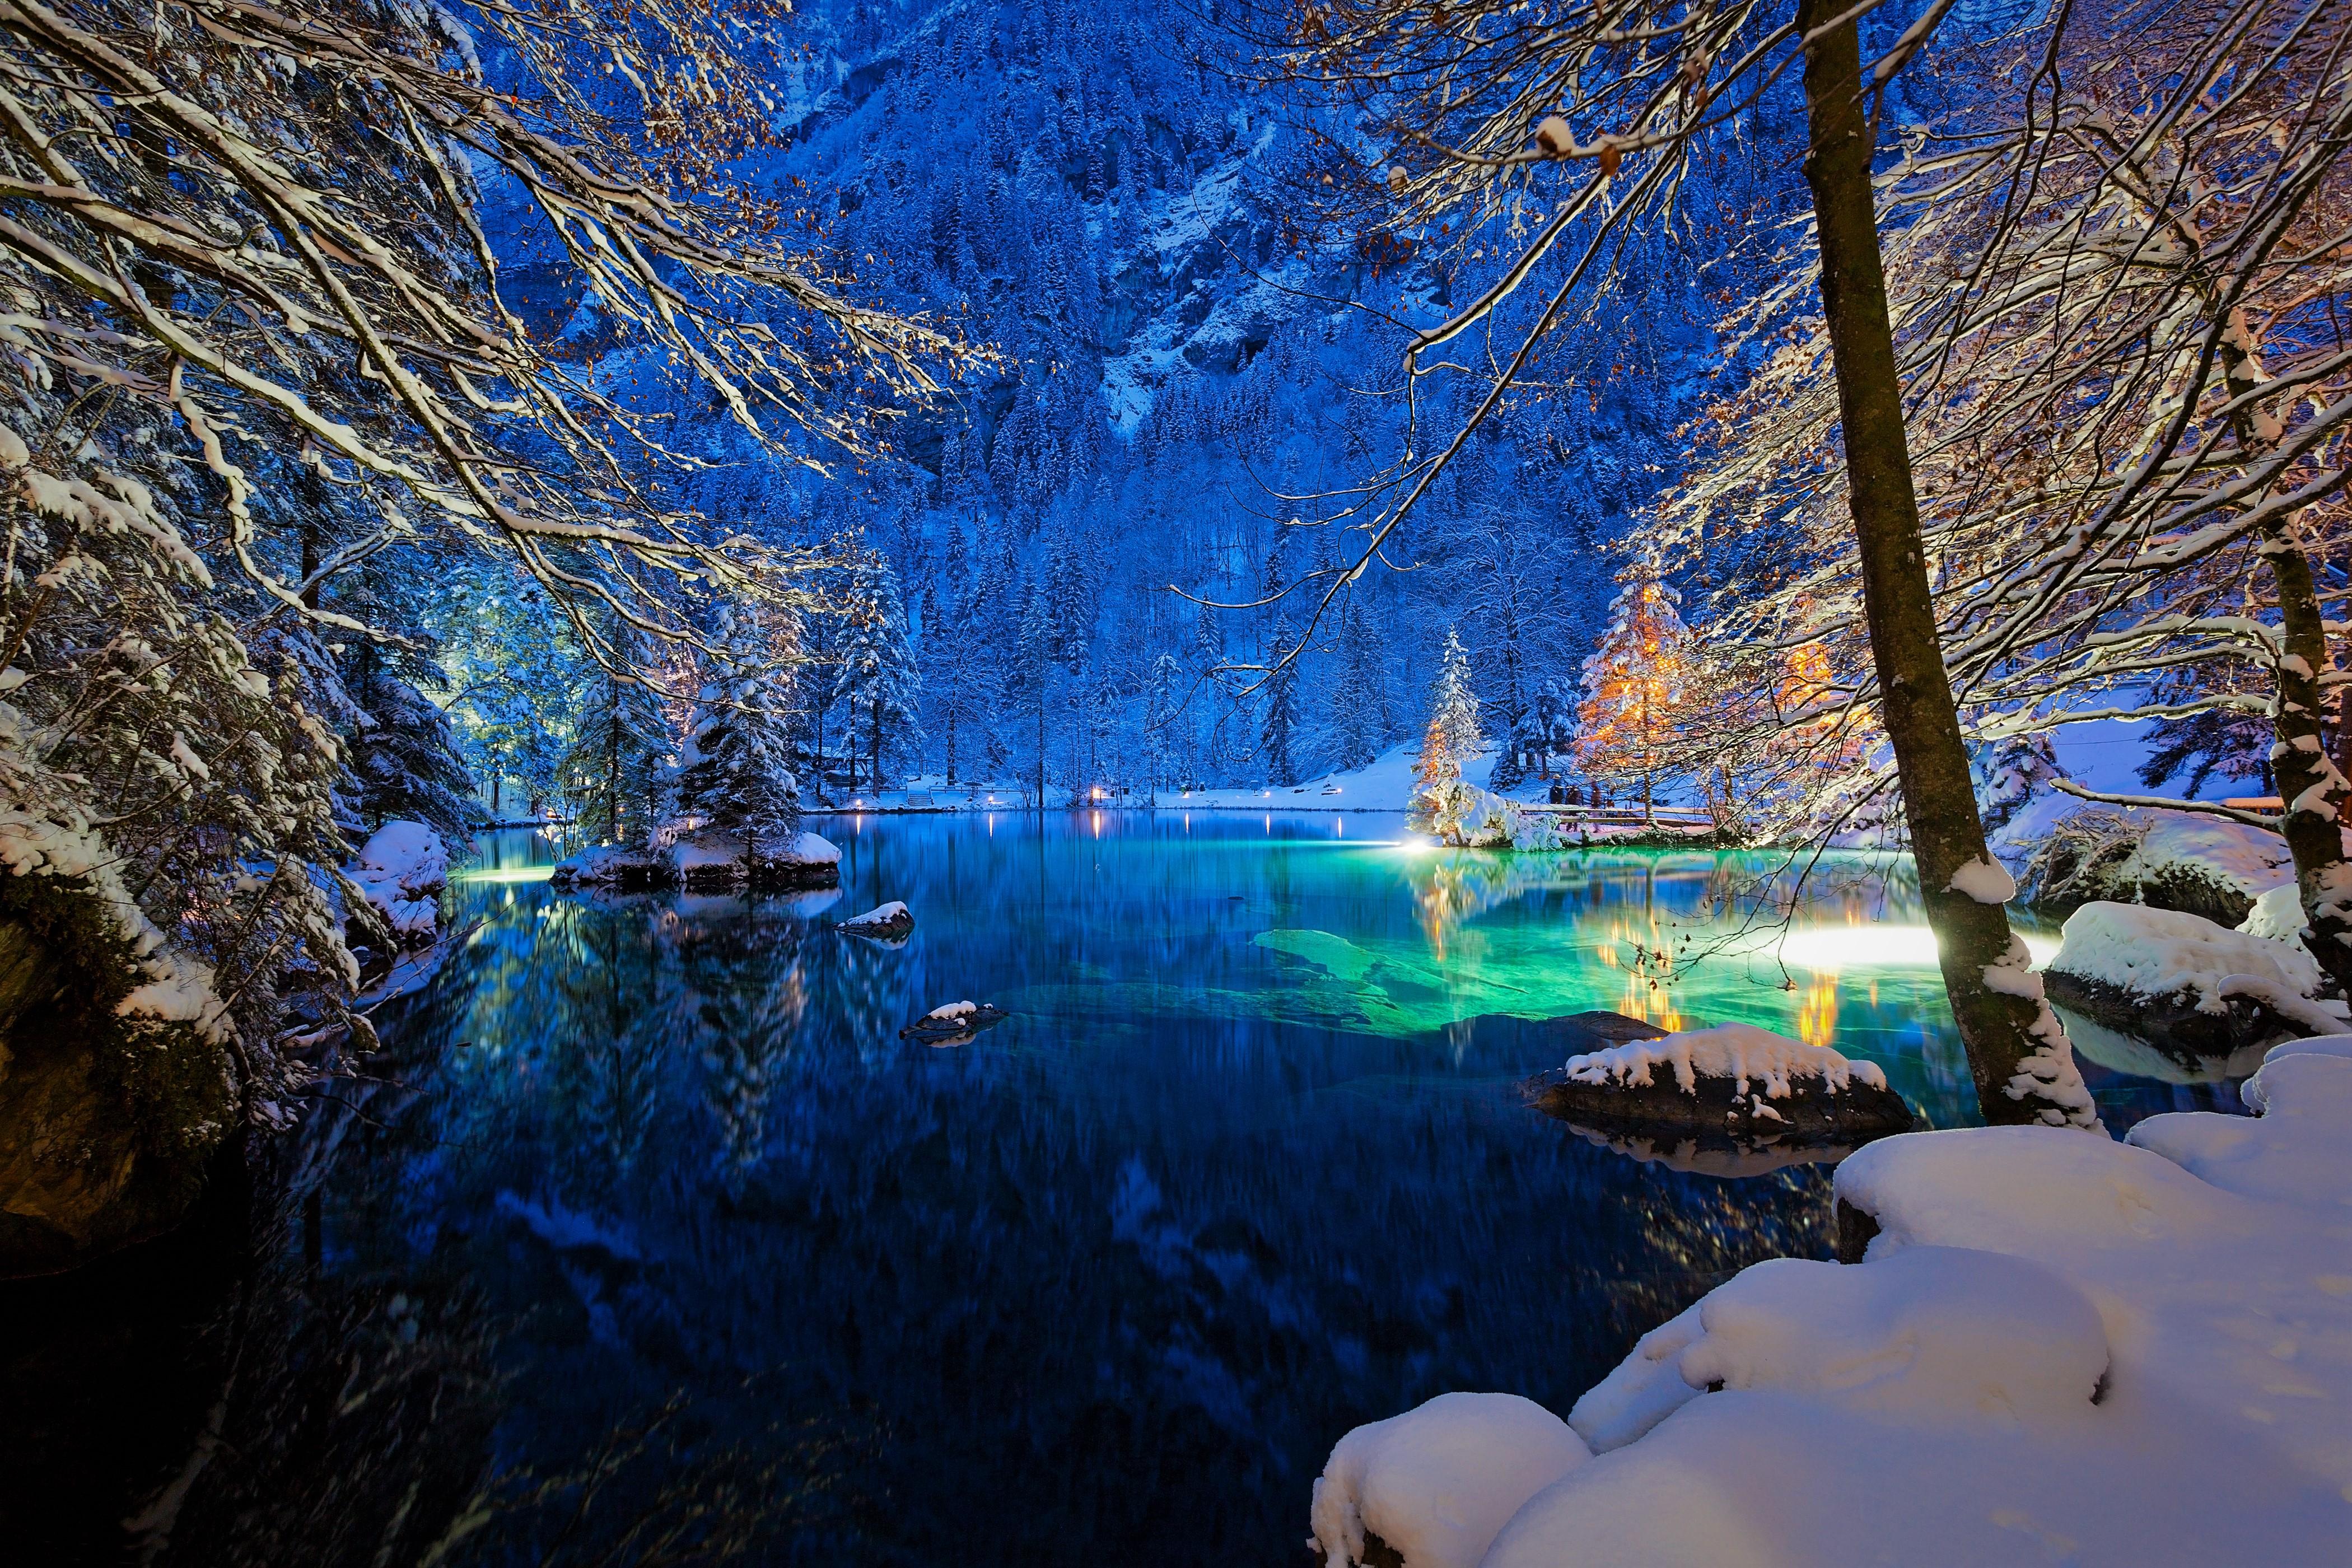 Snowy Trees on Lake in Switzerland 4k Ultra HD Wallpaper